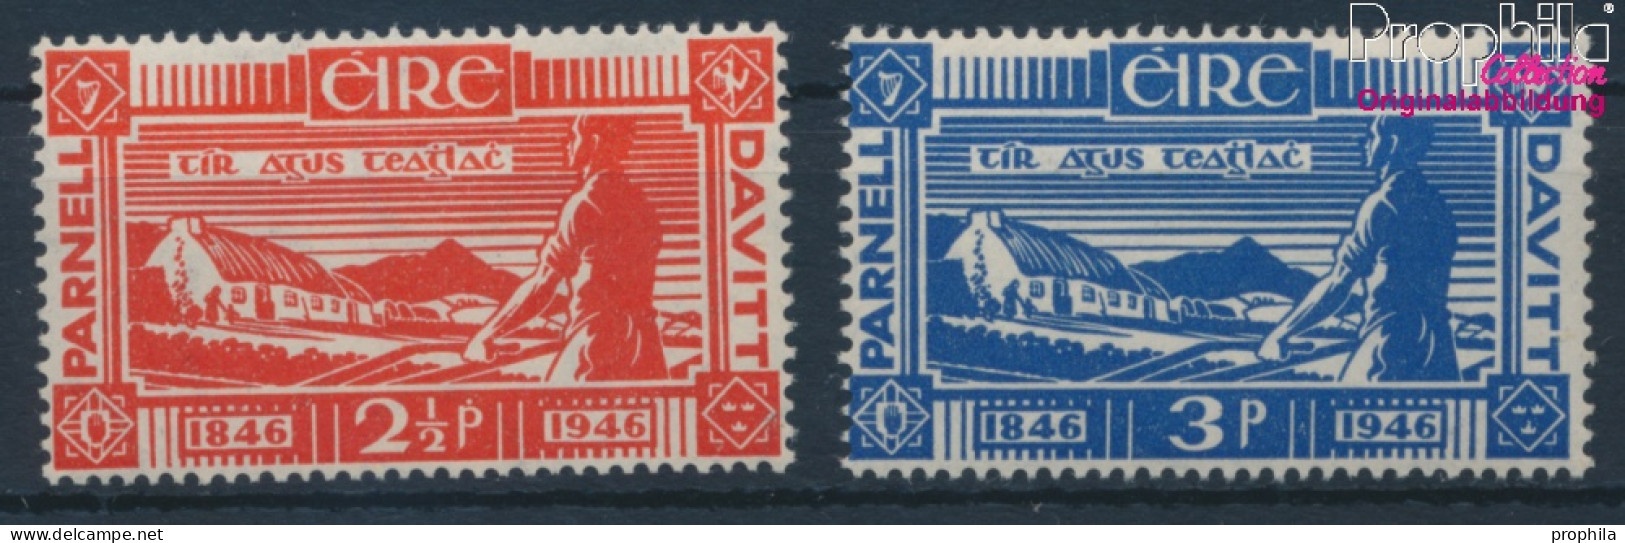 Irland Postfrisch Landreformer 1946 Landreformer  (10398335 - Unused Stamps